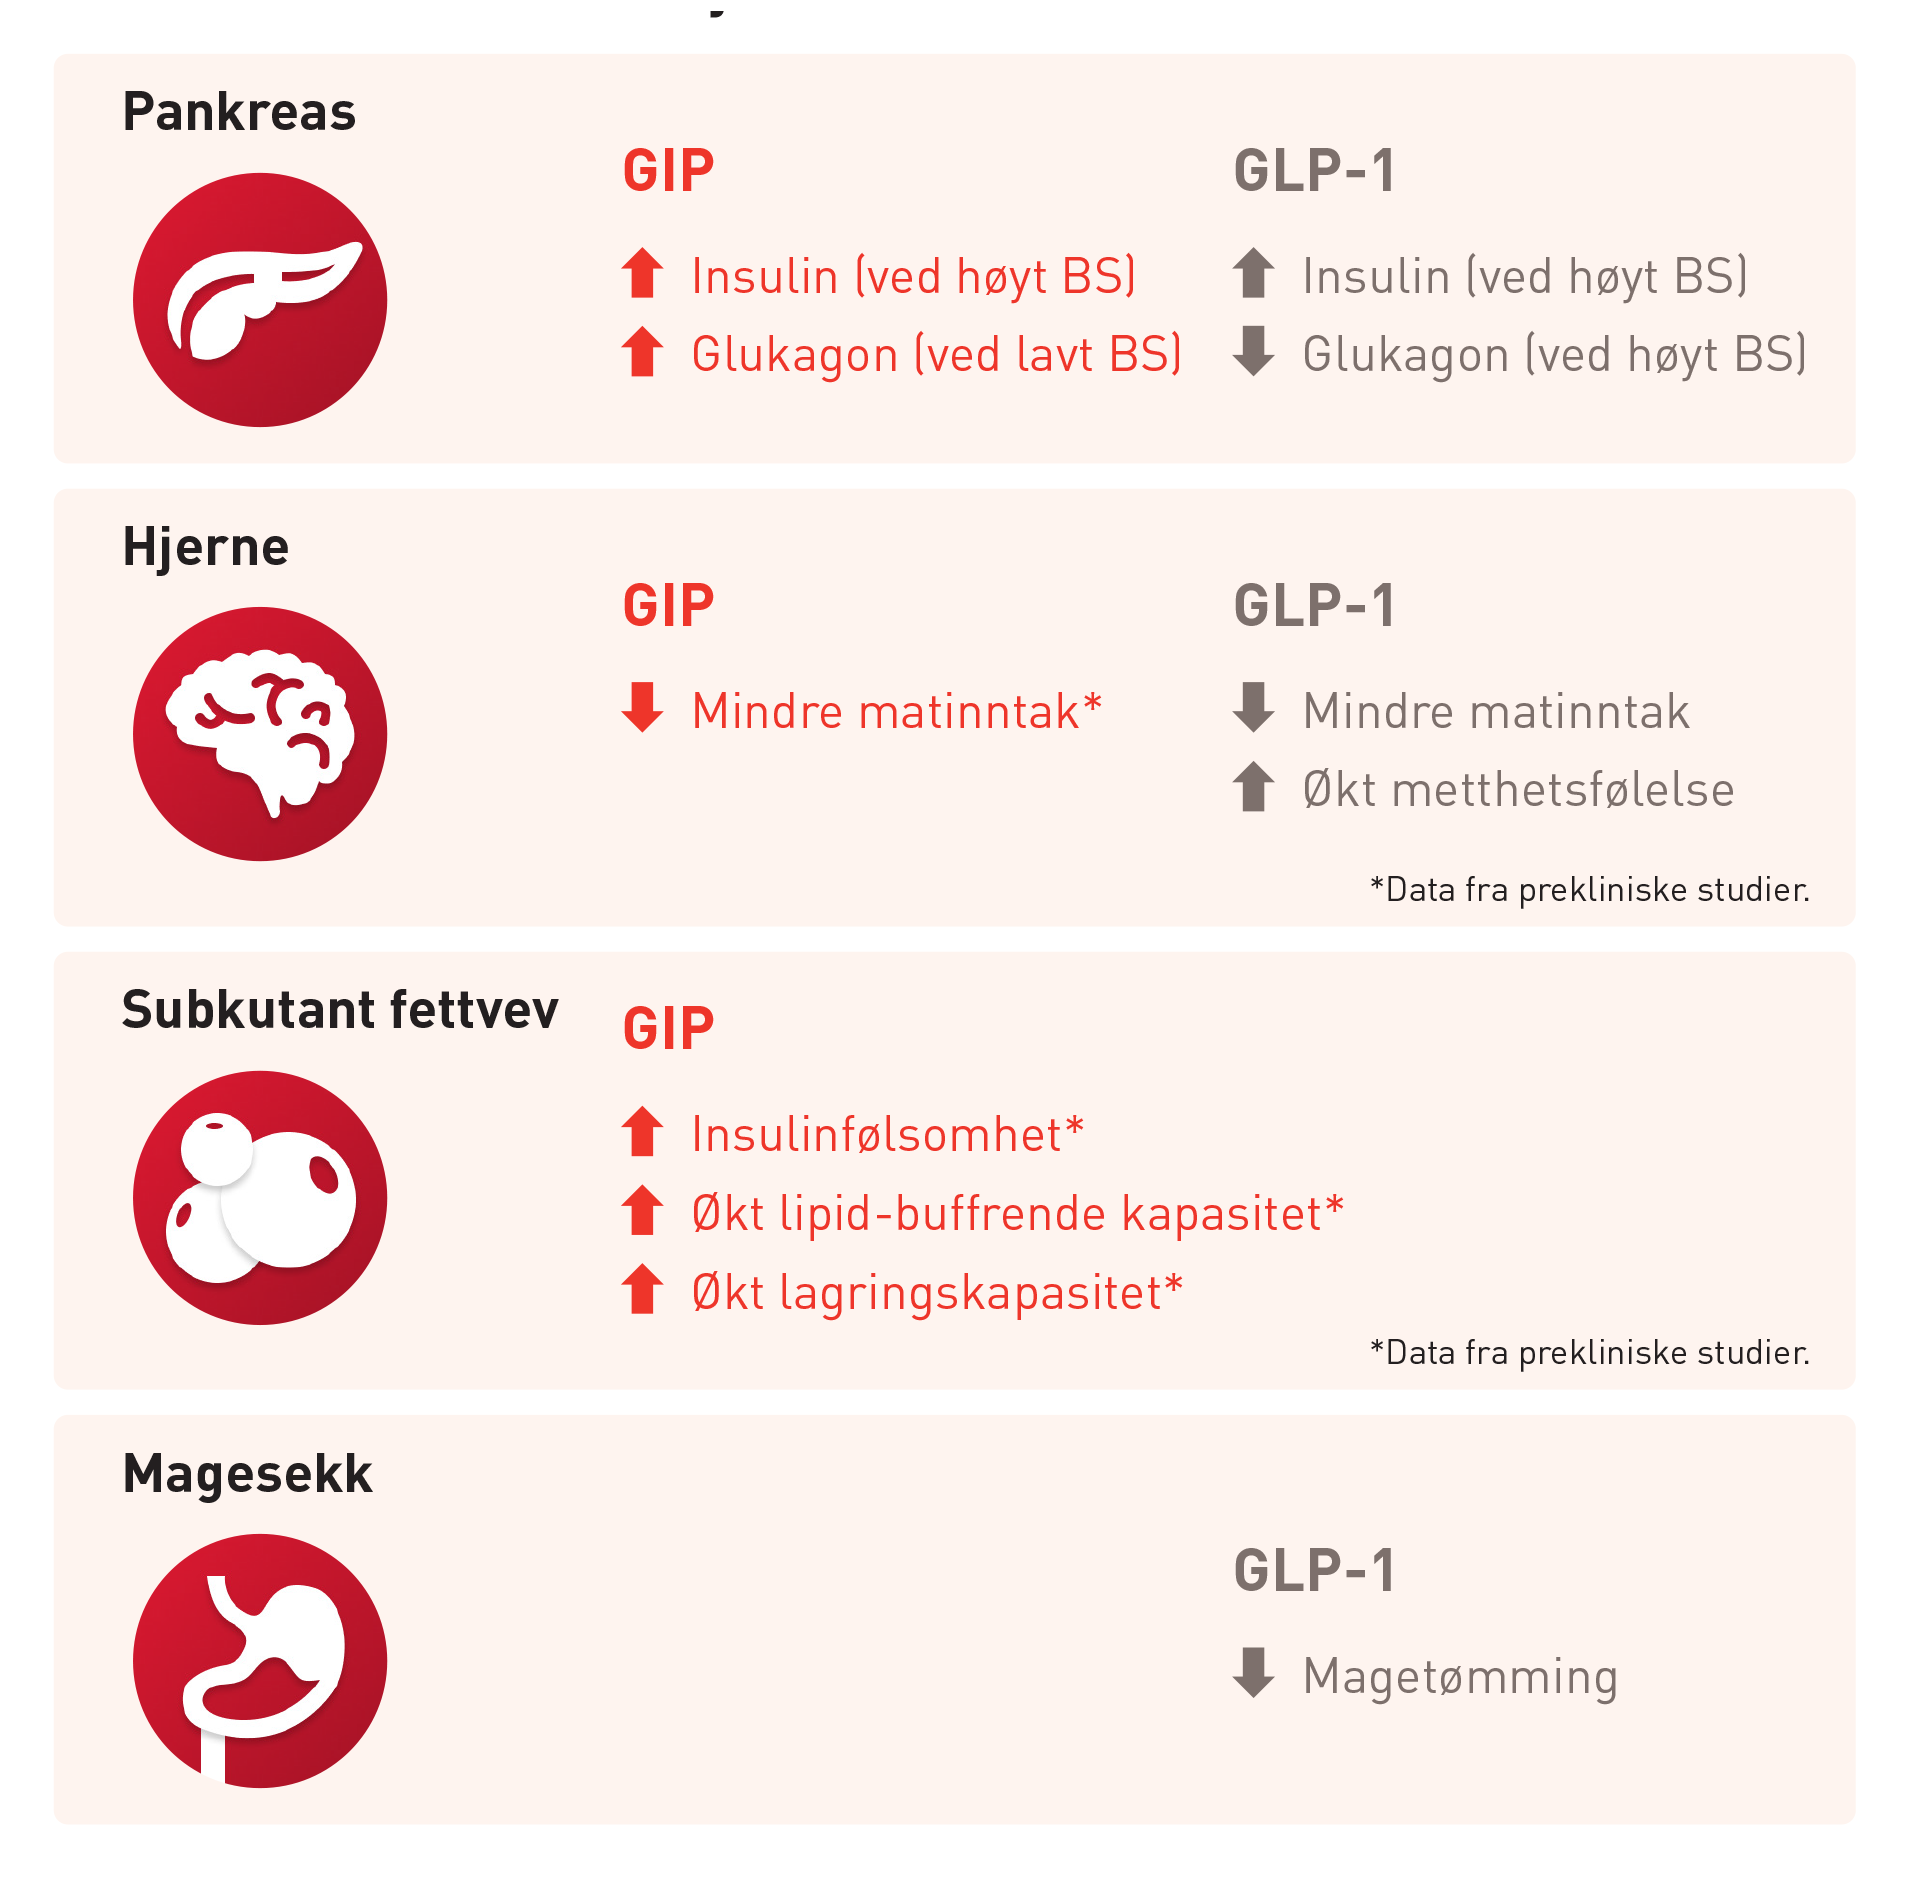 GIP og GLP-1: likheter og forskjeller